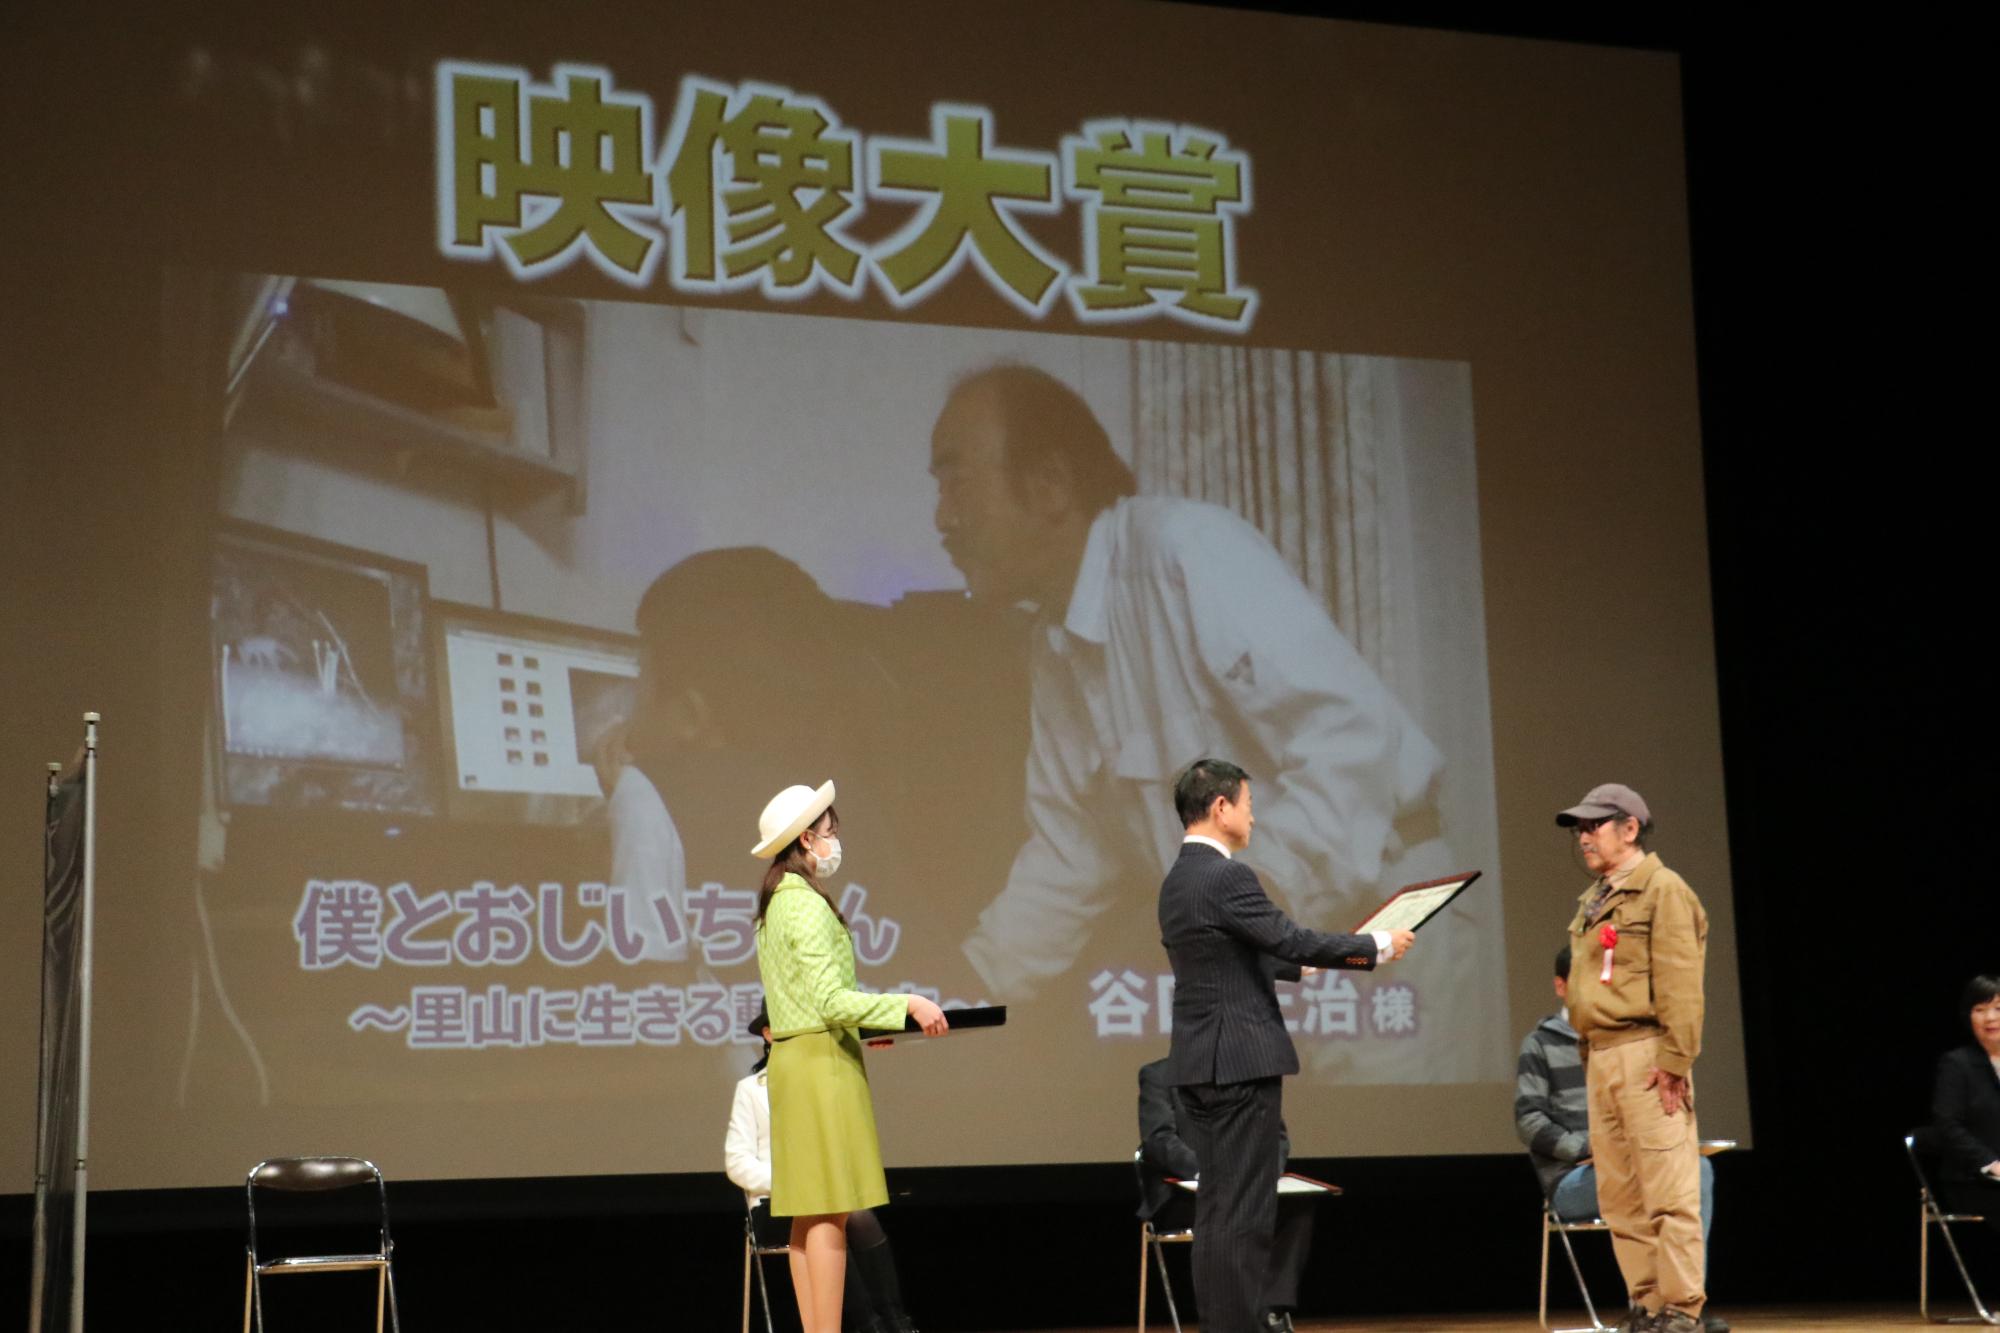 映像大賞を受賞された谷口さんが、舞台上で表彰状を授与されている